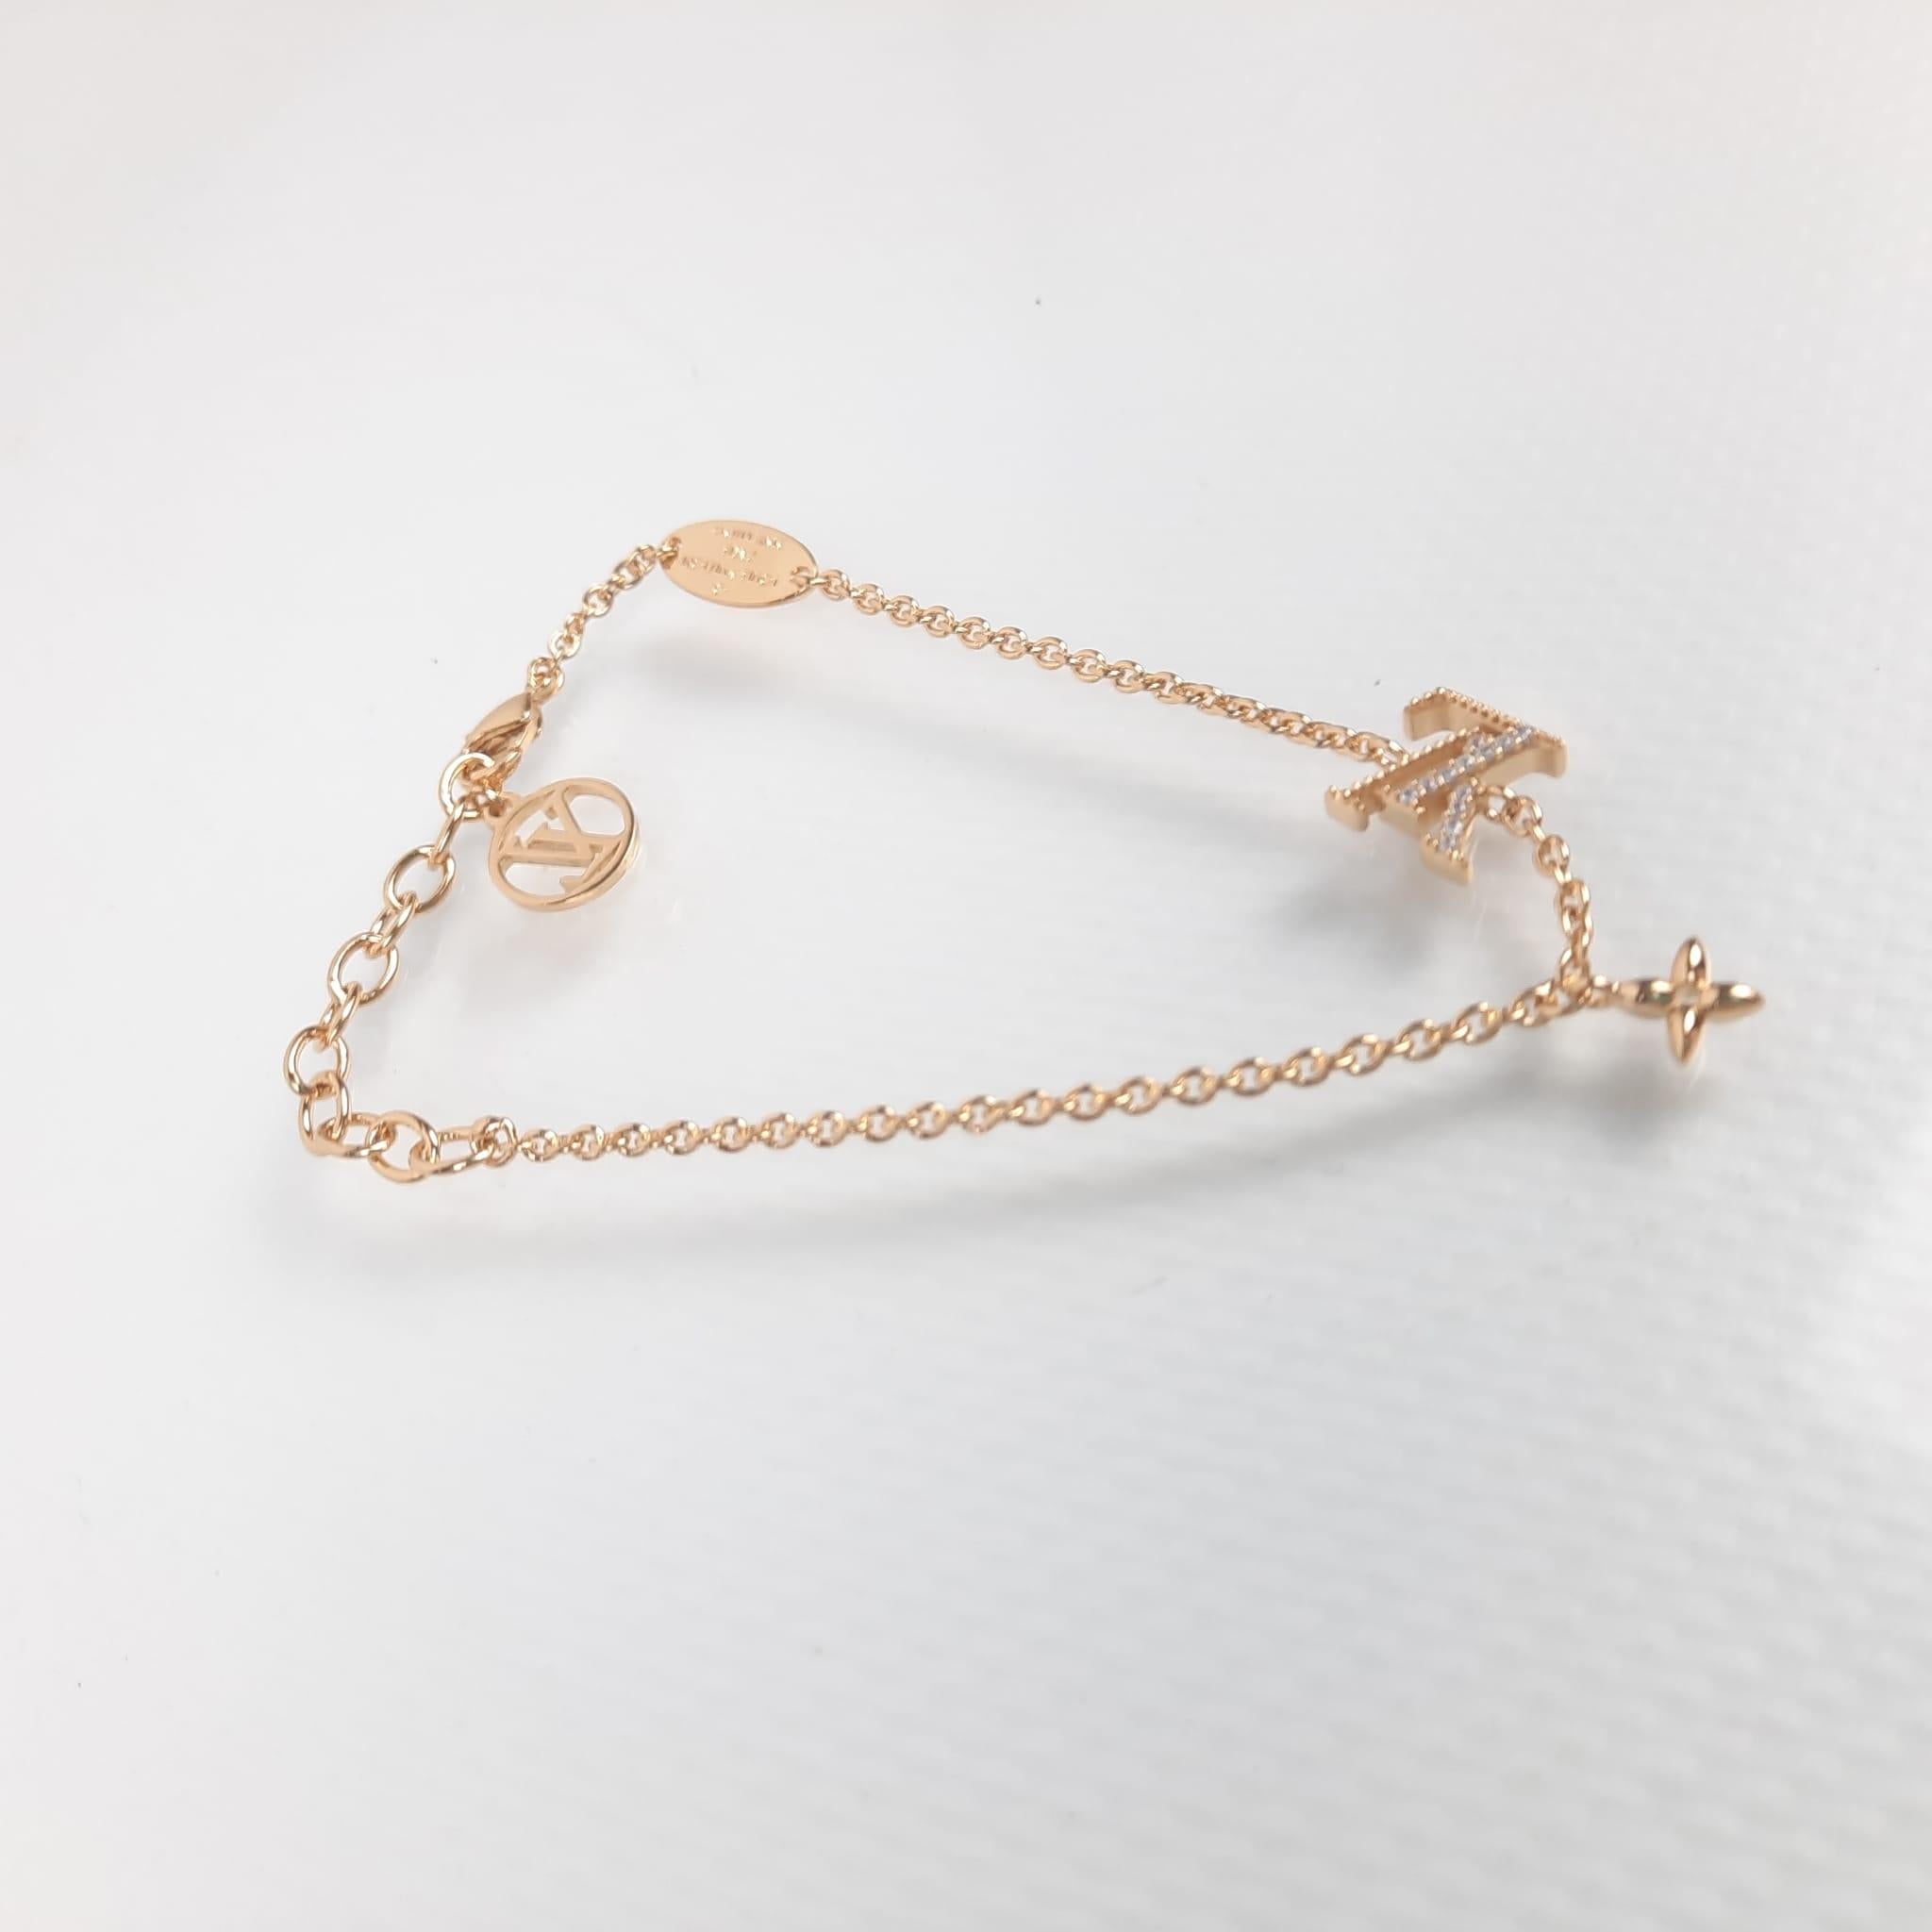 Louis Vuitton LV Iconic Bracelet Gold